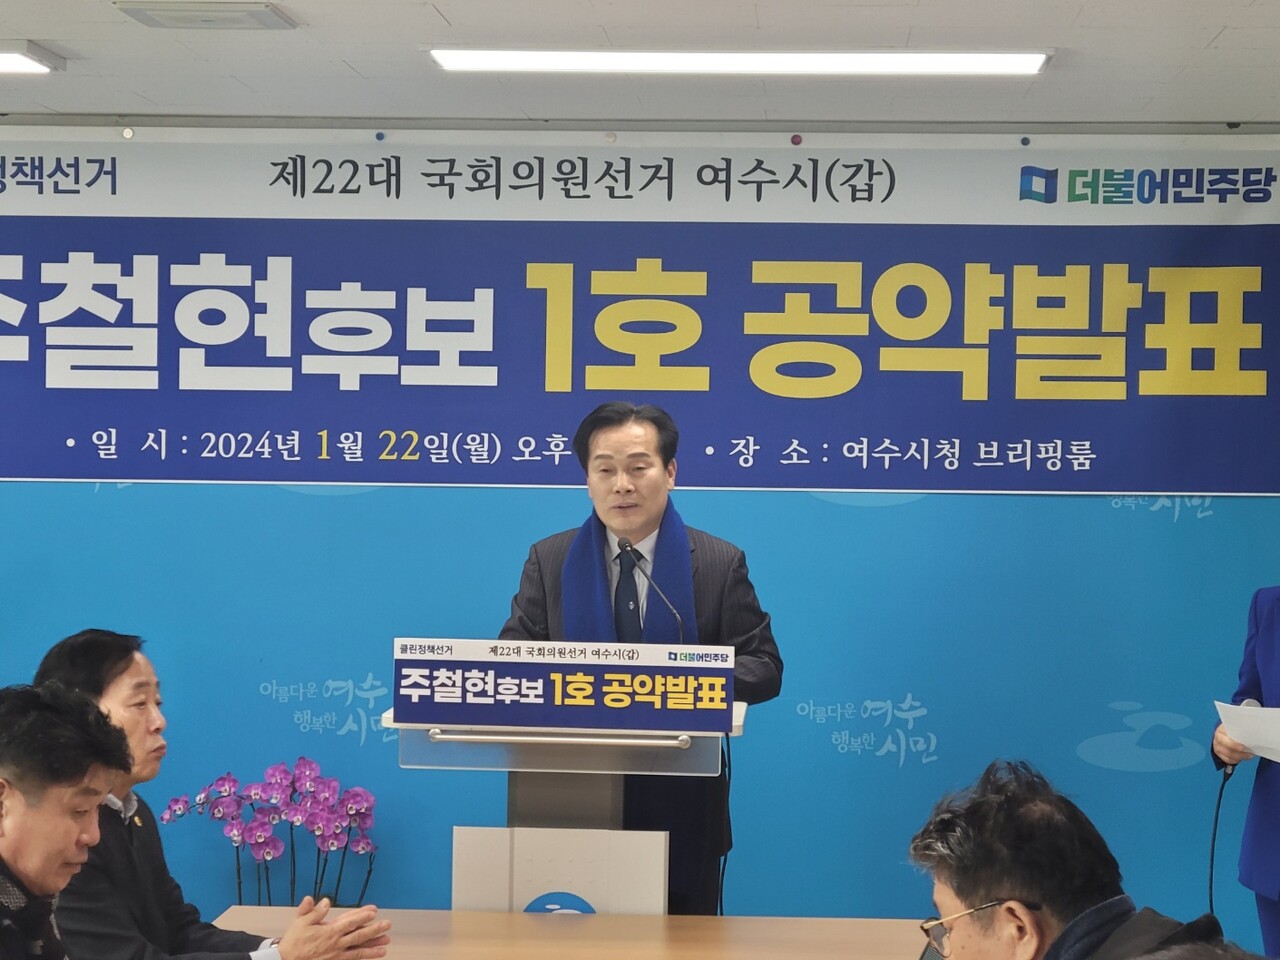 ▲주철현 국회의원이 지난달 22일 오후 여수시청 브리핑실에서 기자회견을 갖고 있다.